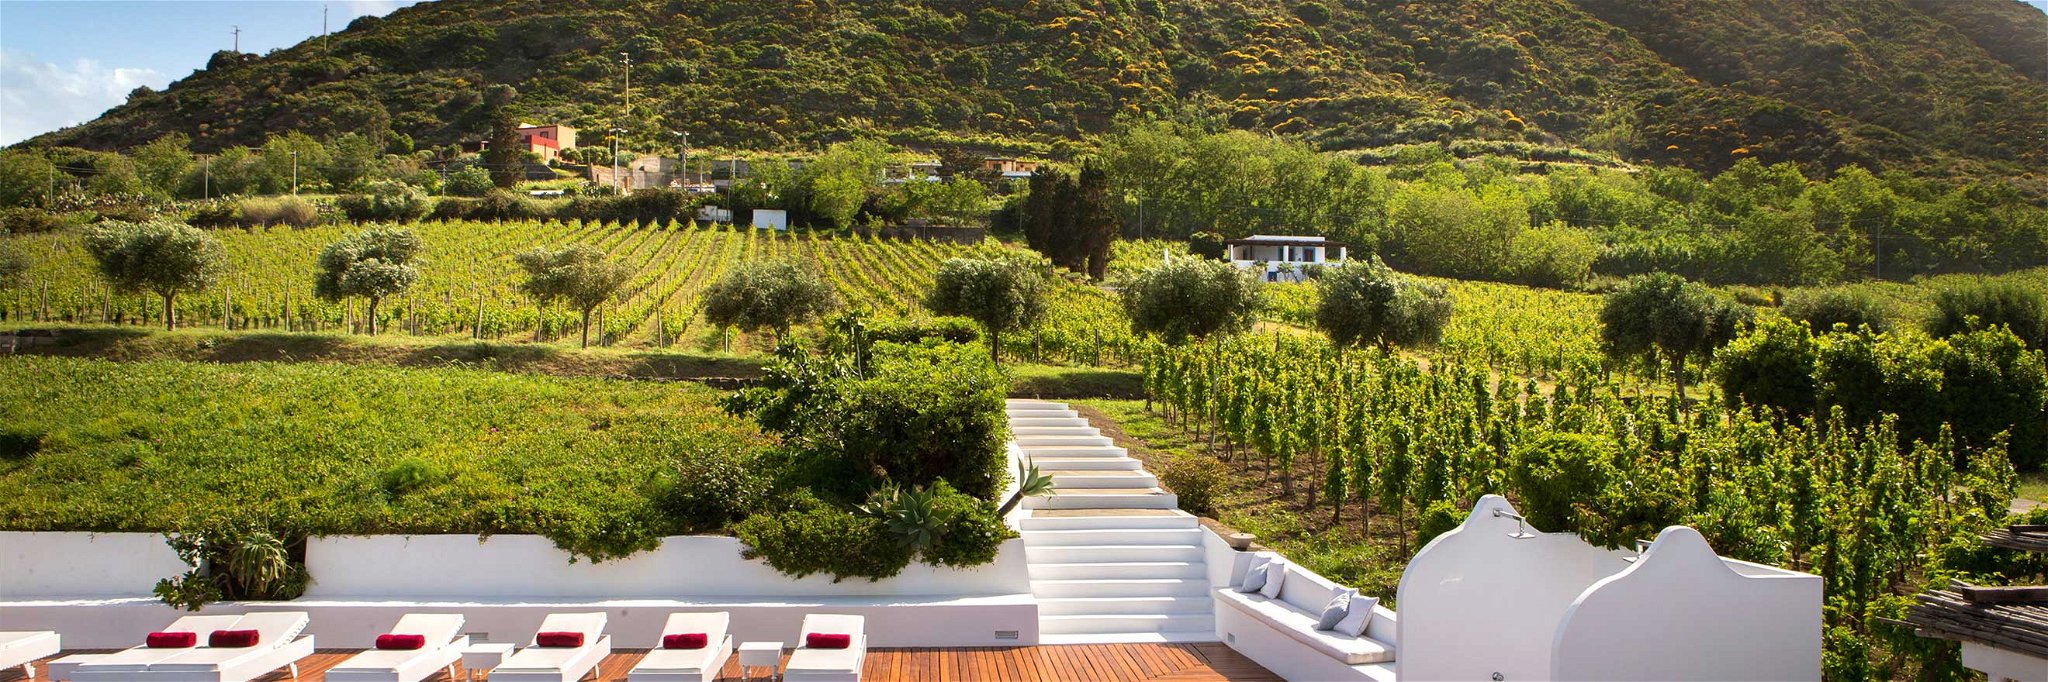 Das »Capofaro Malvasia &amp; Resort« auf der Insel Salina liegt inmitten von Weingärten. Hier entsteht einer der besten Süßweine Italiens.